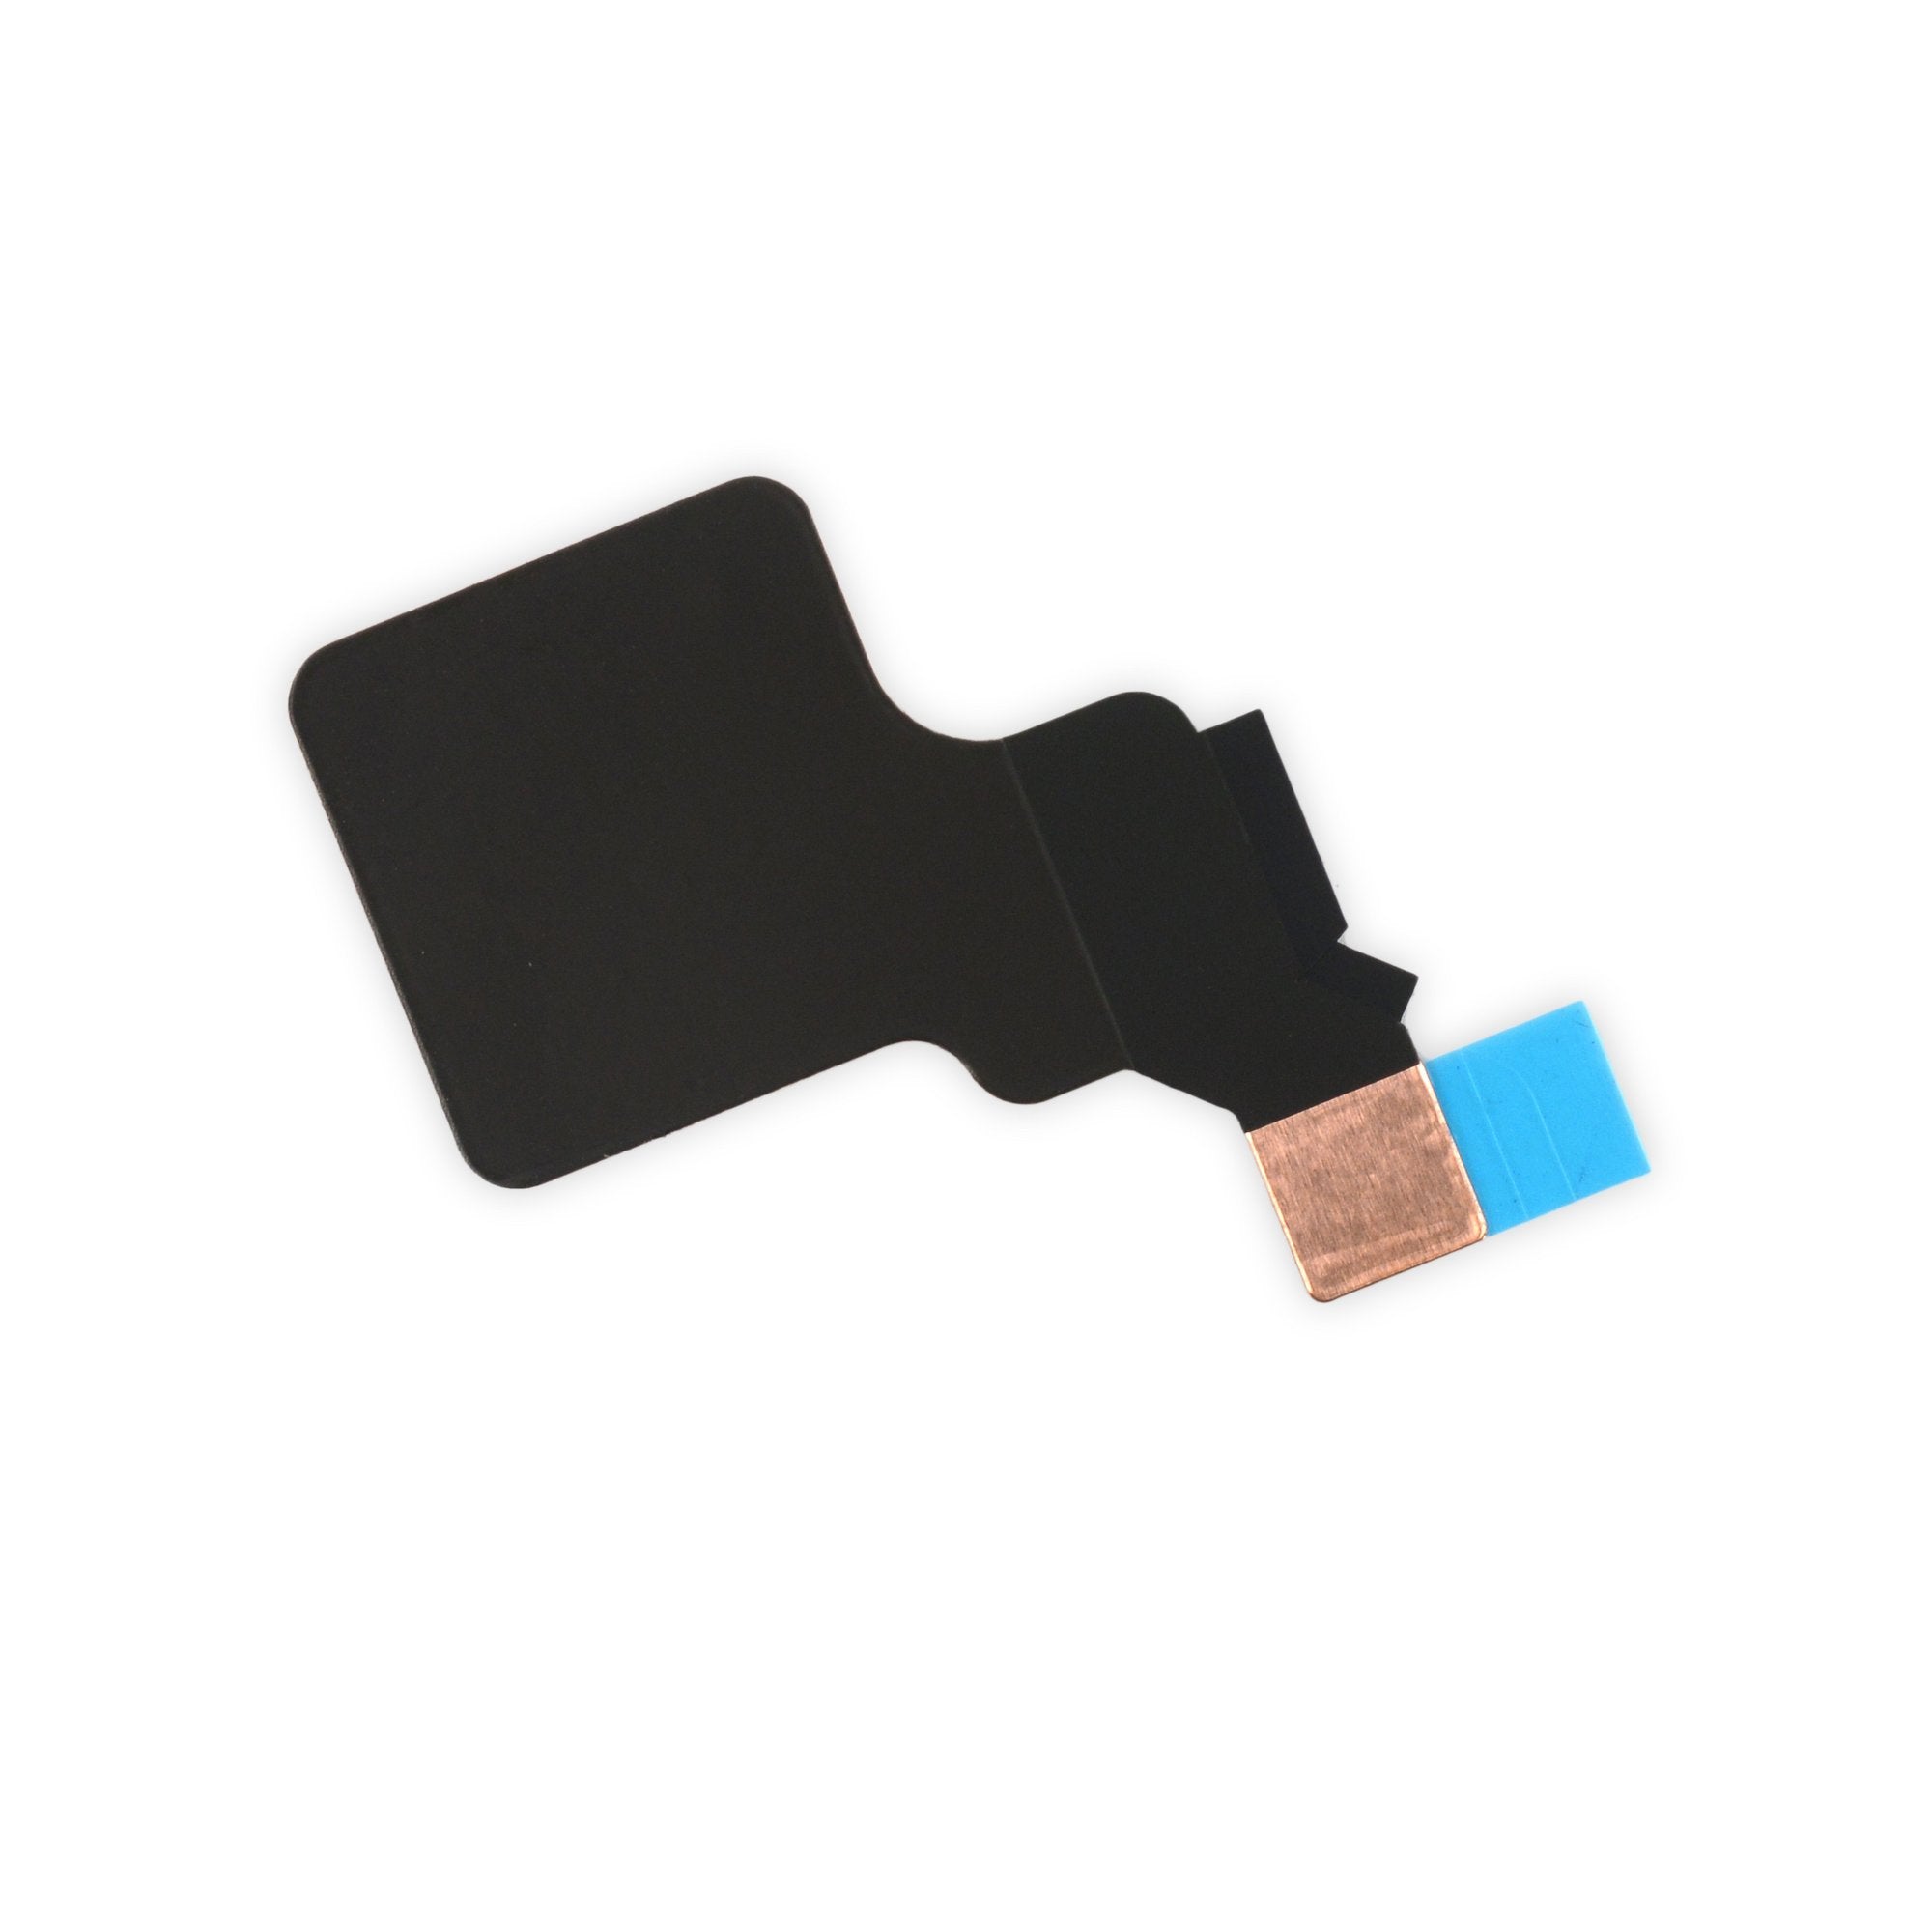 iPhone 5c Camera and Sensor Cable Copper Shield Sticker